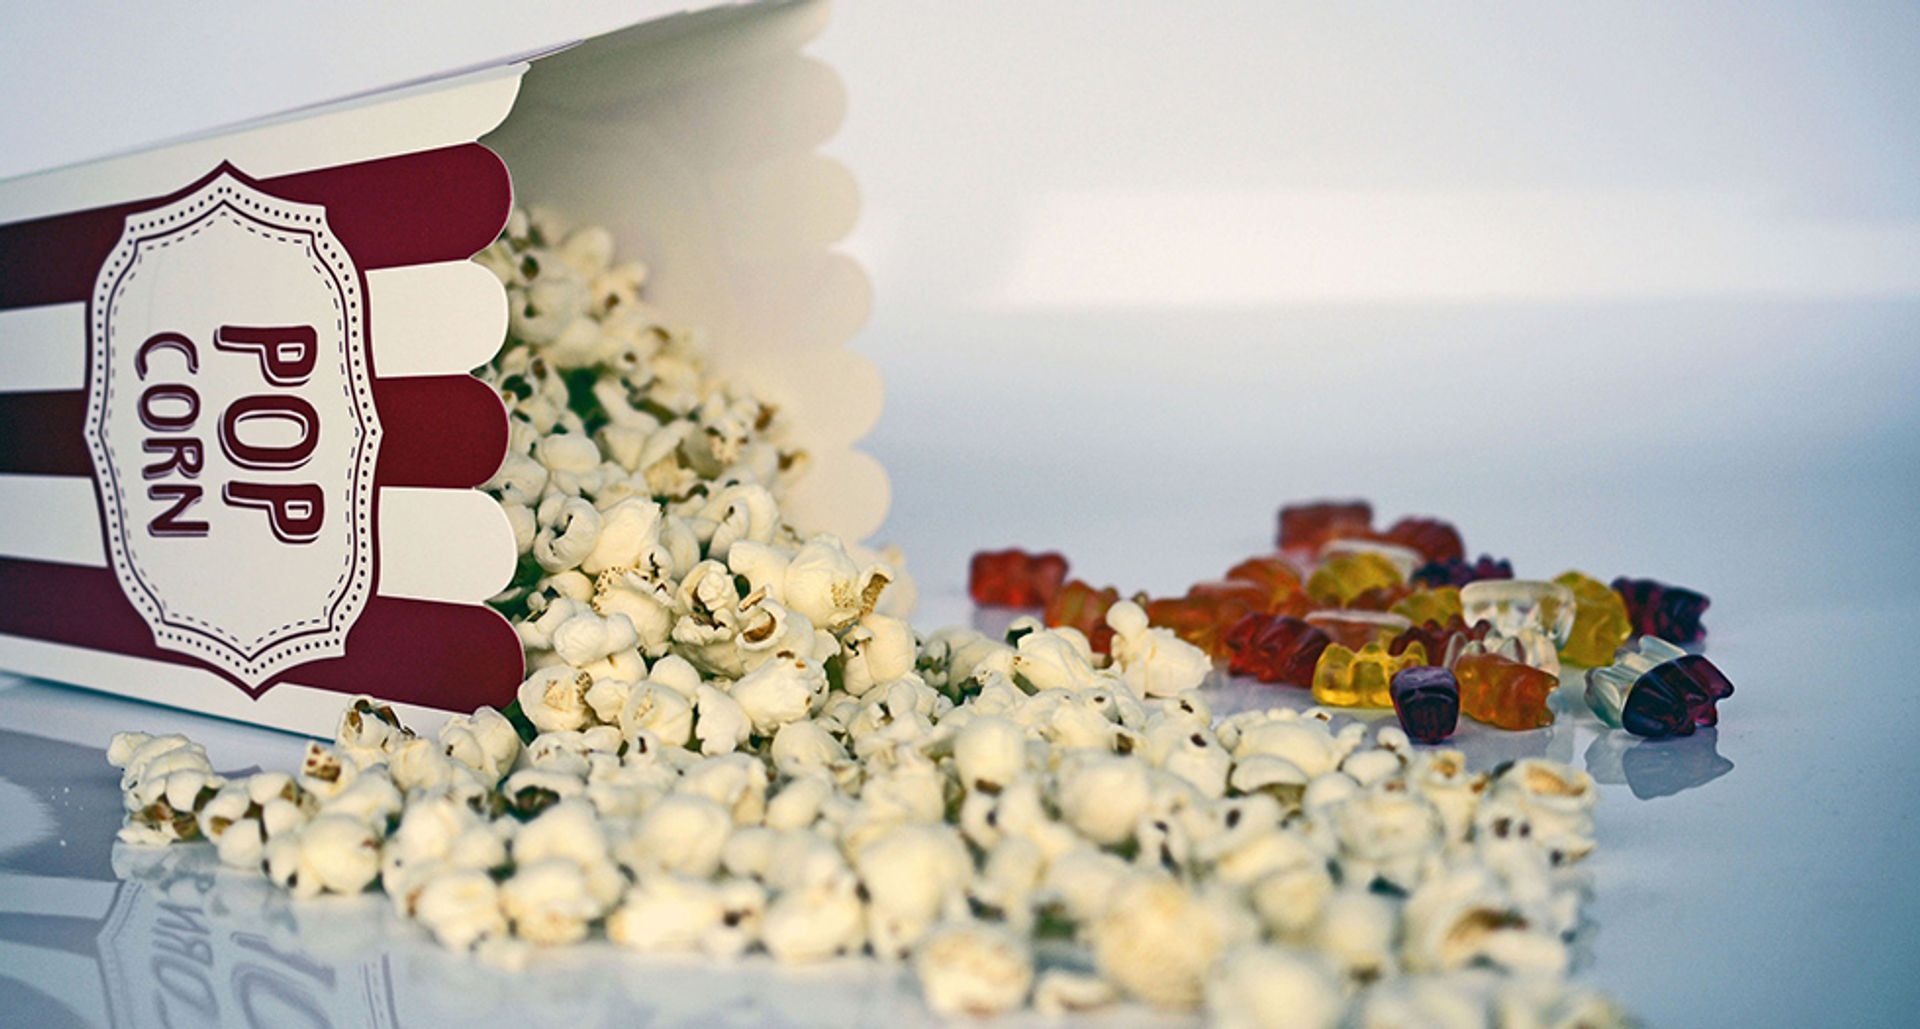 abces Scheermes prototype Verpakkingen van snacks in de bioscoop worden steeds groter - Kassa -  BNNVARA